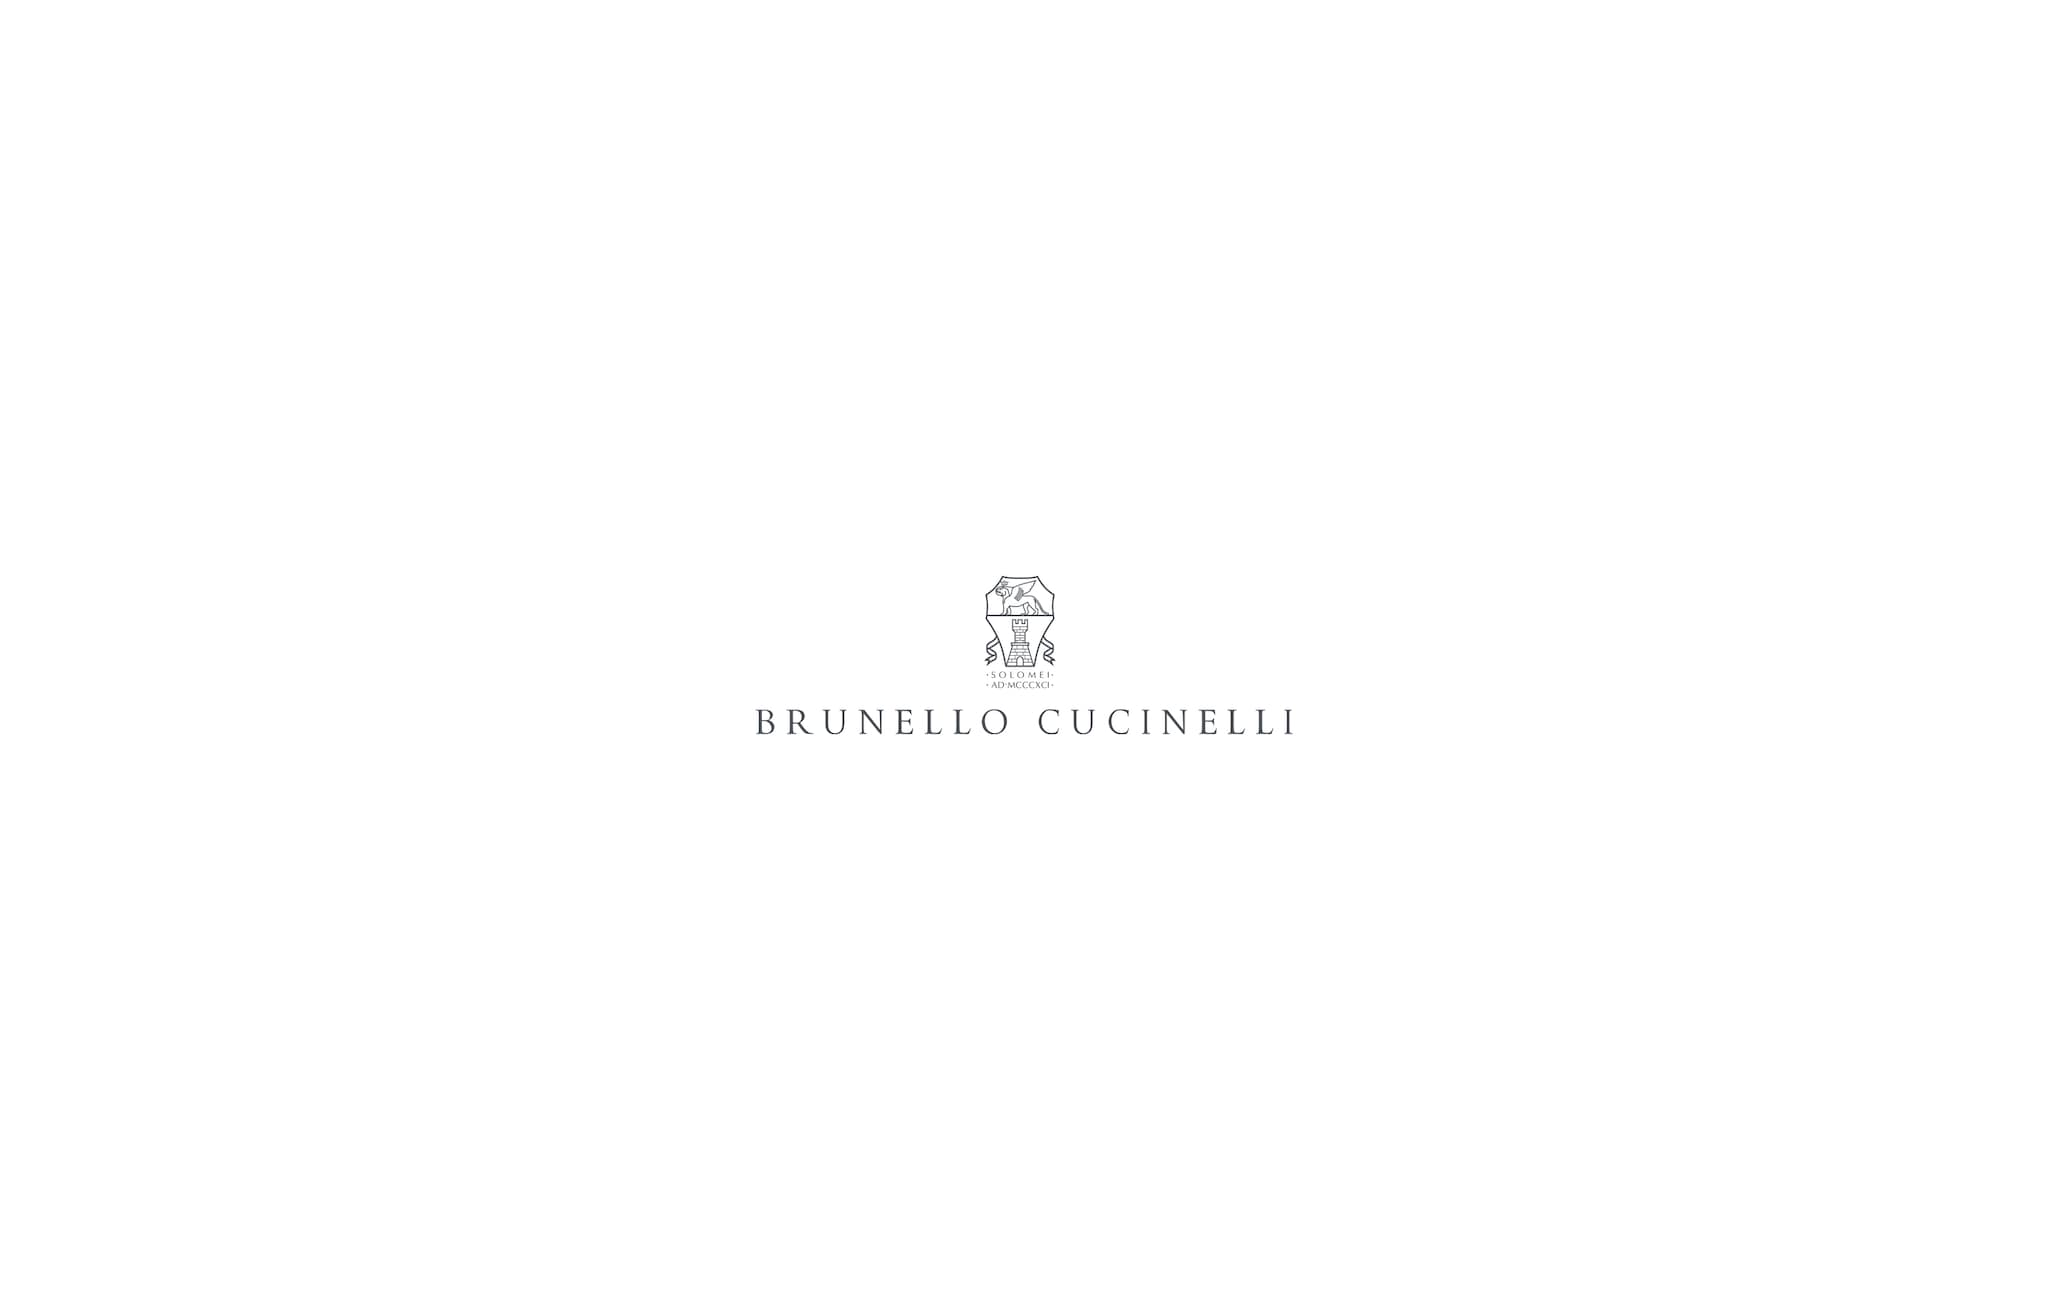  野战夹克 本色 男款 - Brunello Cucinelli 